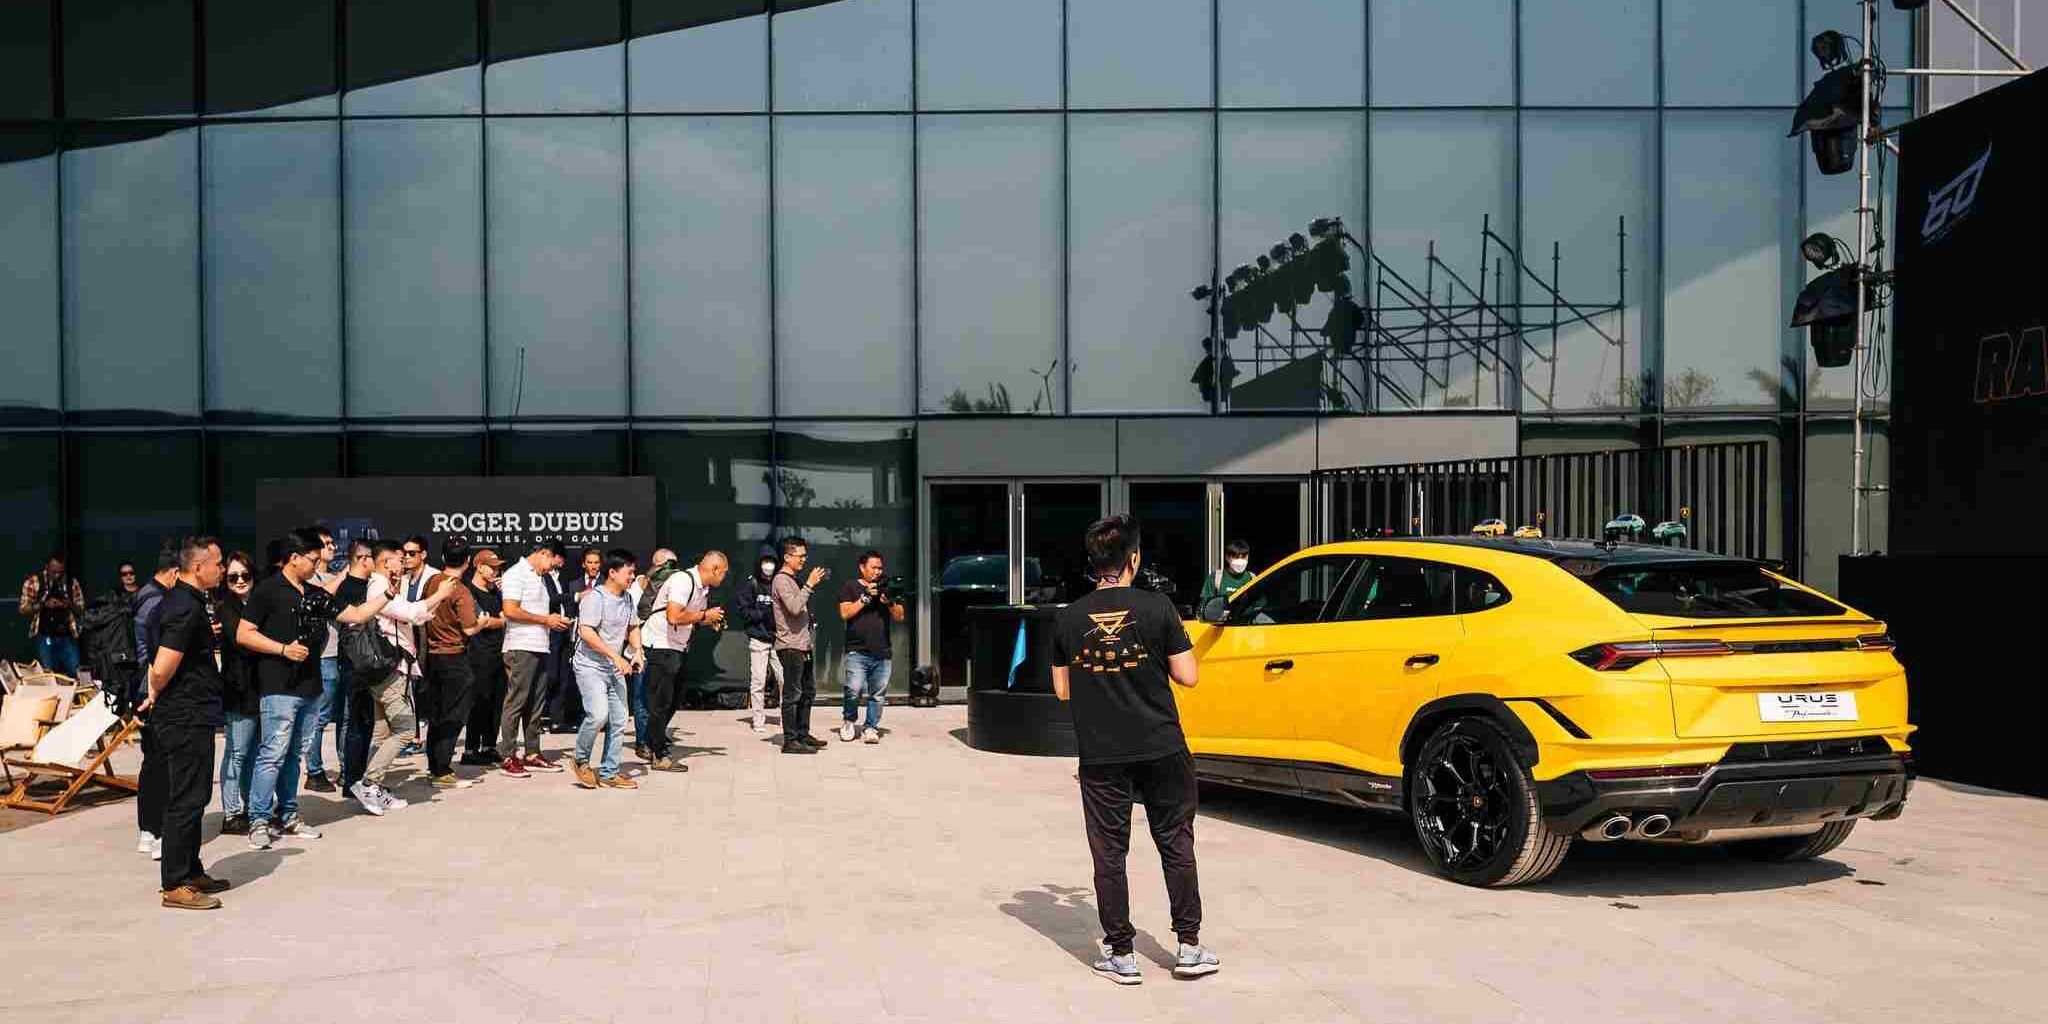 The Global City: Các doanh nhân hội tụ bên dàn siêu xe Lamborghini ( sự kiện ra mắt ngày 15/3 )